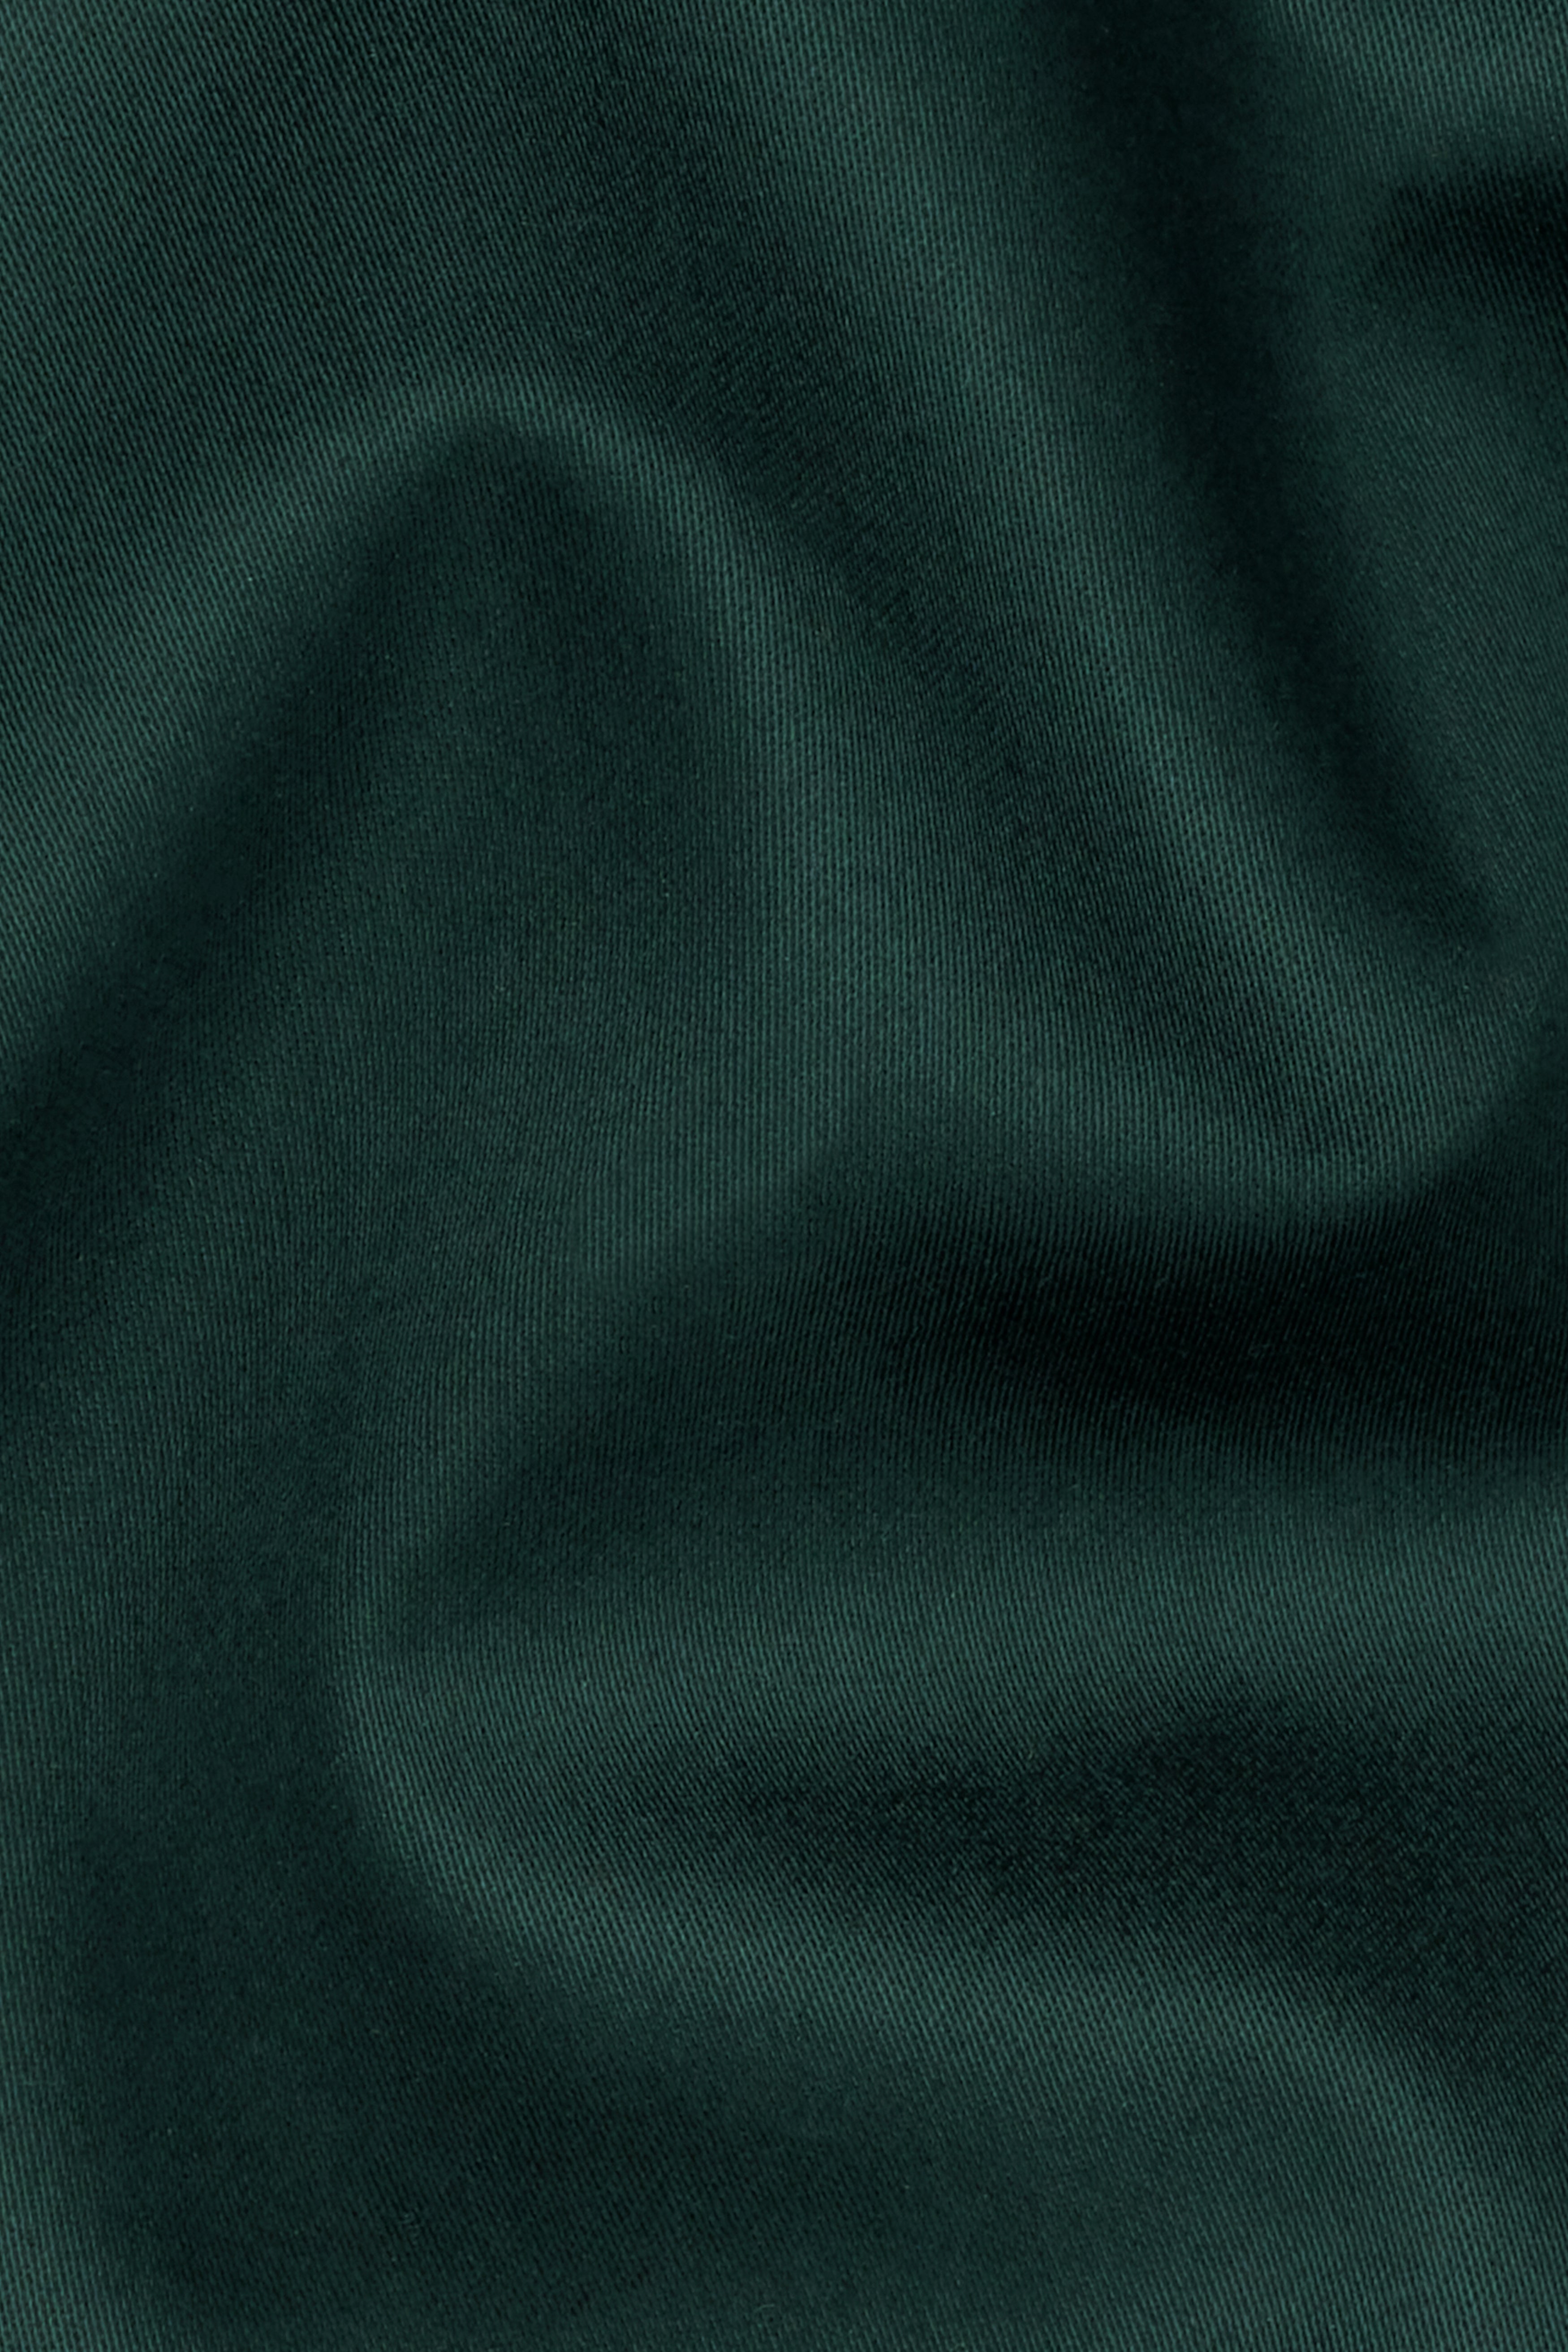 Dark Slate Green Premium Cotton Pant T2739-28, T2739-30, T2739-32, T2739-34, T2739-36, T2739-38, T2739-40, T2739-42, T2739-44